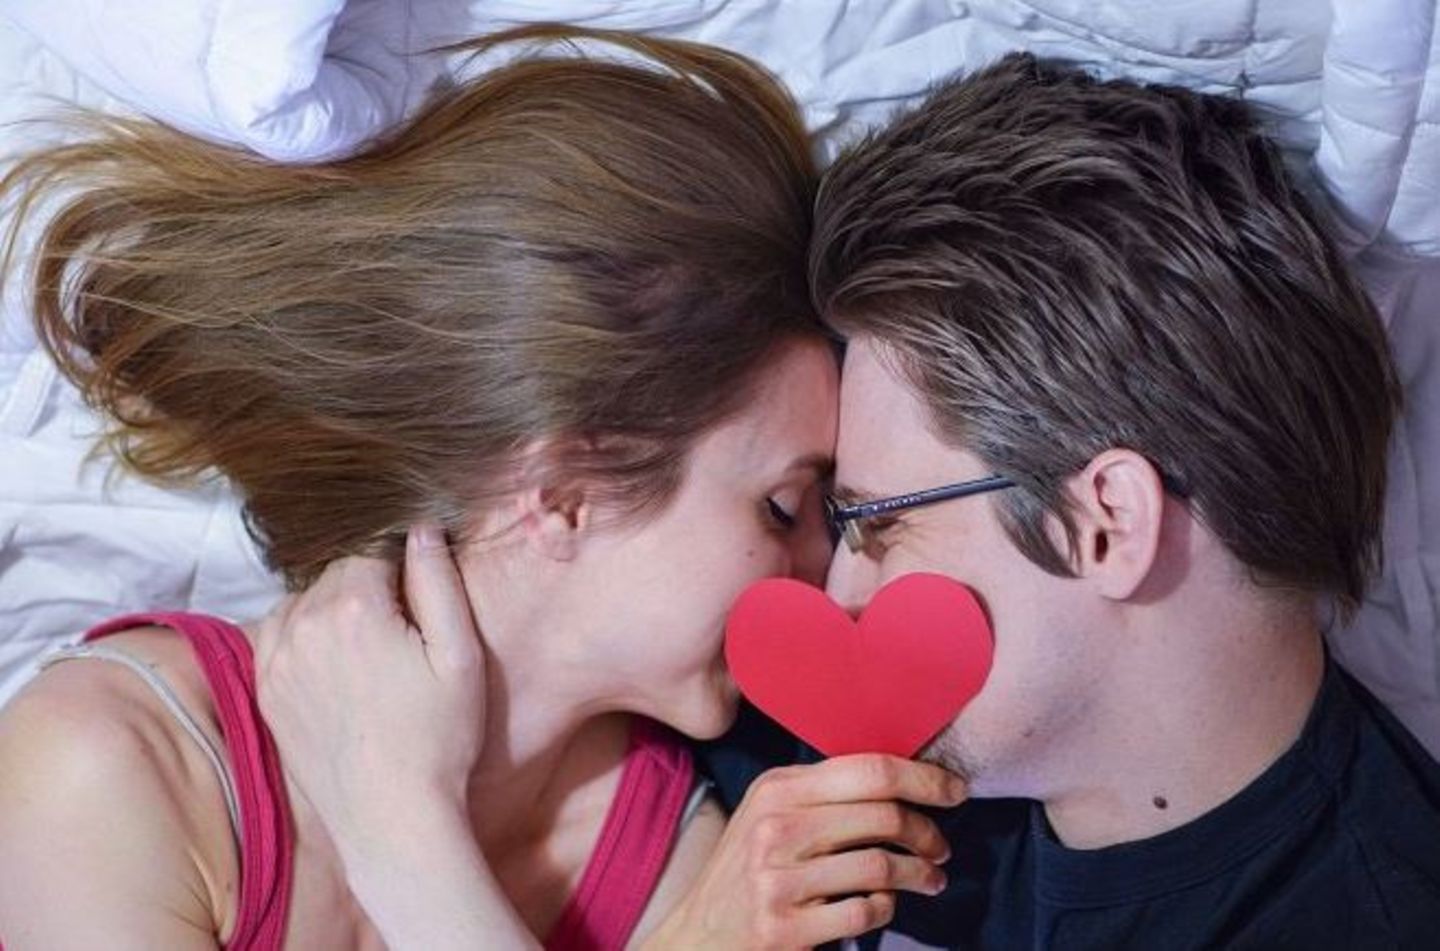 "Home is where the heart is": Edward Snowden postet am Valentinstag aus seinem russischen Versteck ein Liebesselfie mit seiner Freundin Lindsay. 